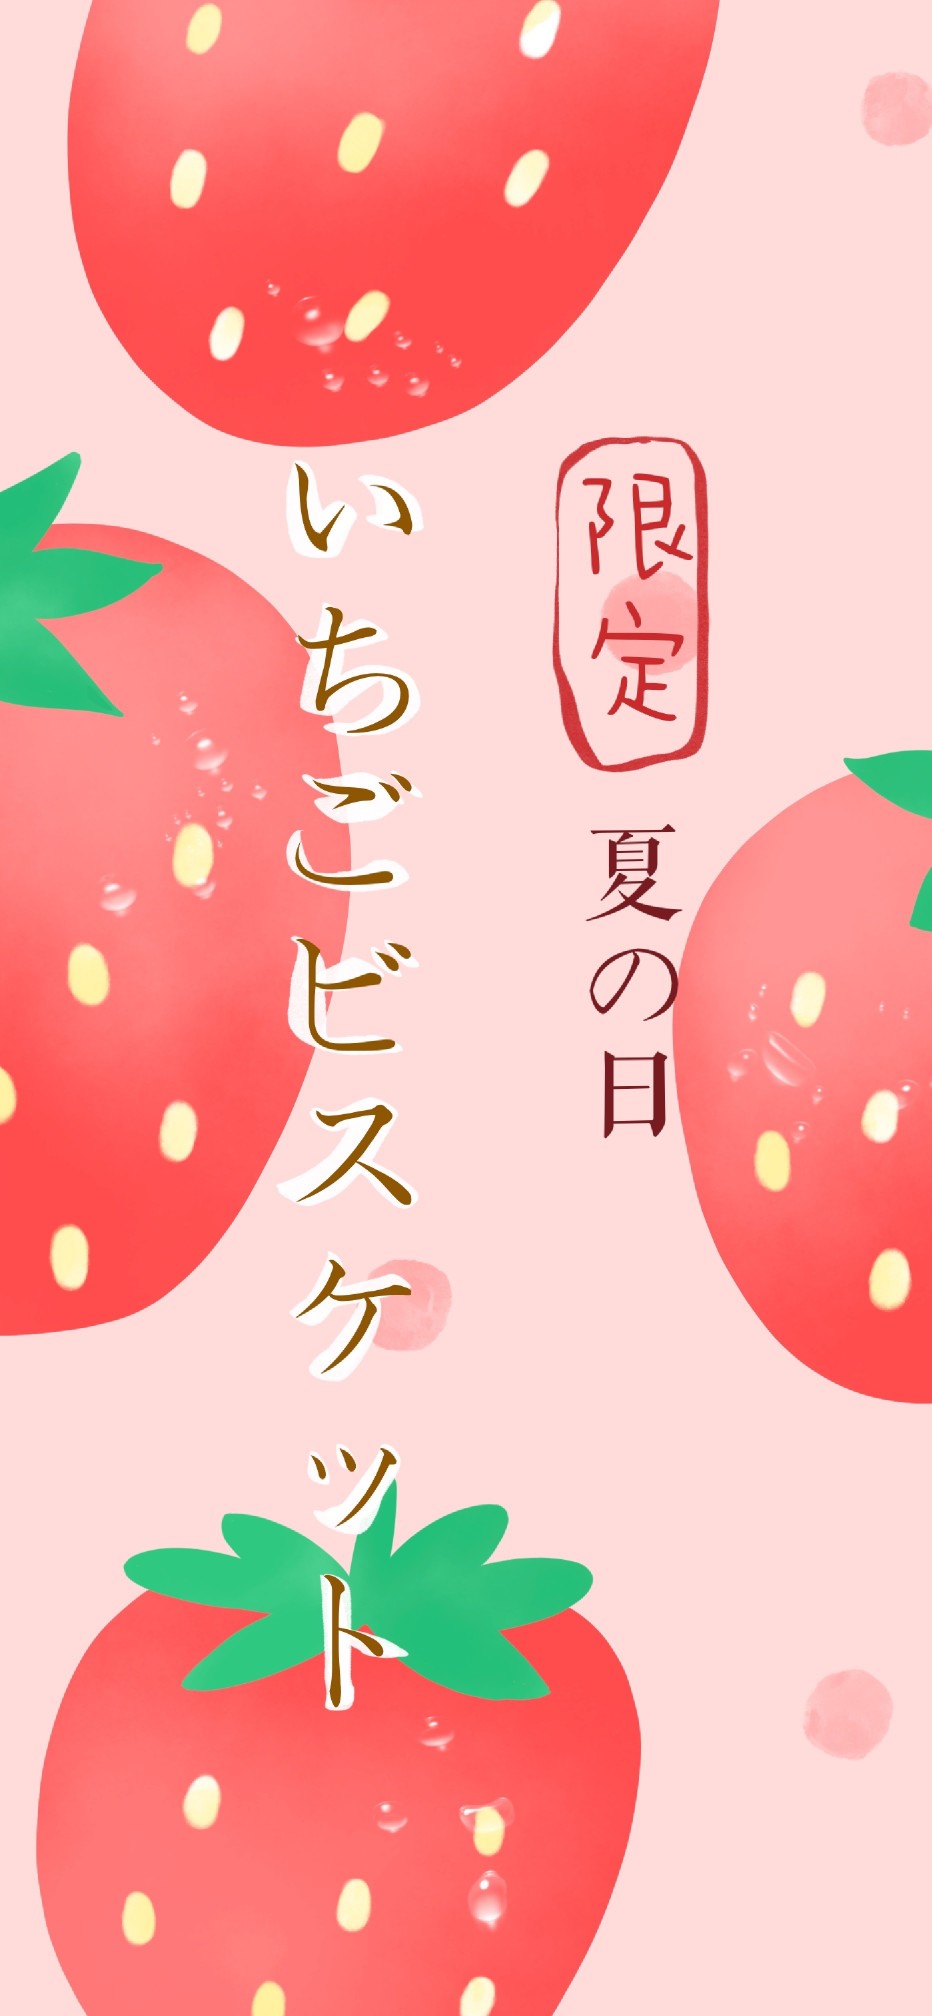 夏日限定水果壁纸 cr:柿子仔 #少女心##手绘插画##小清新壁纸